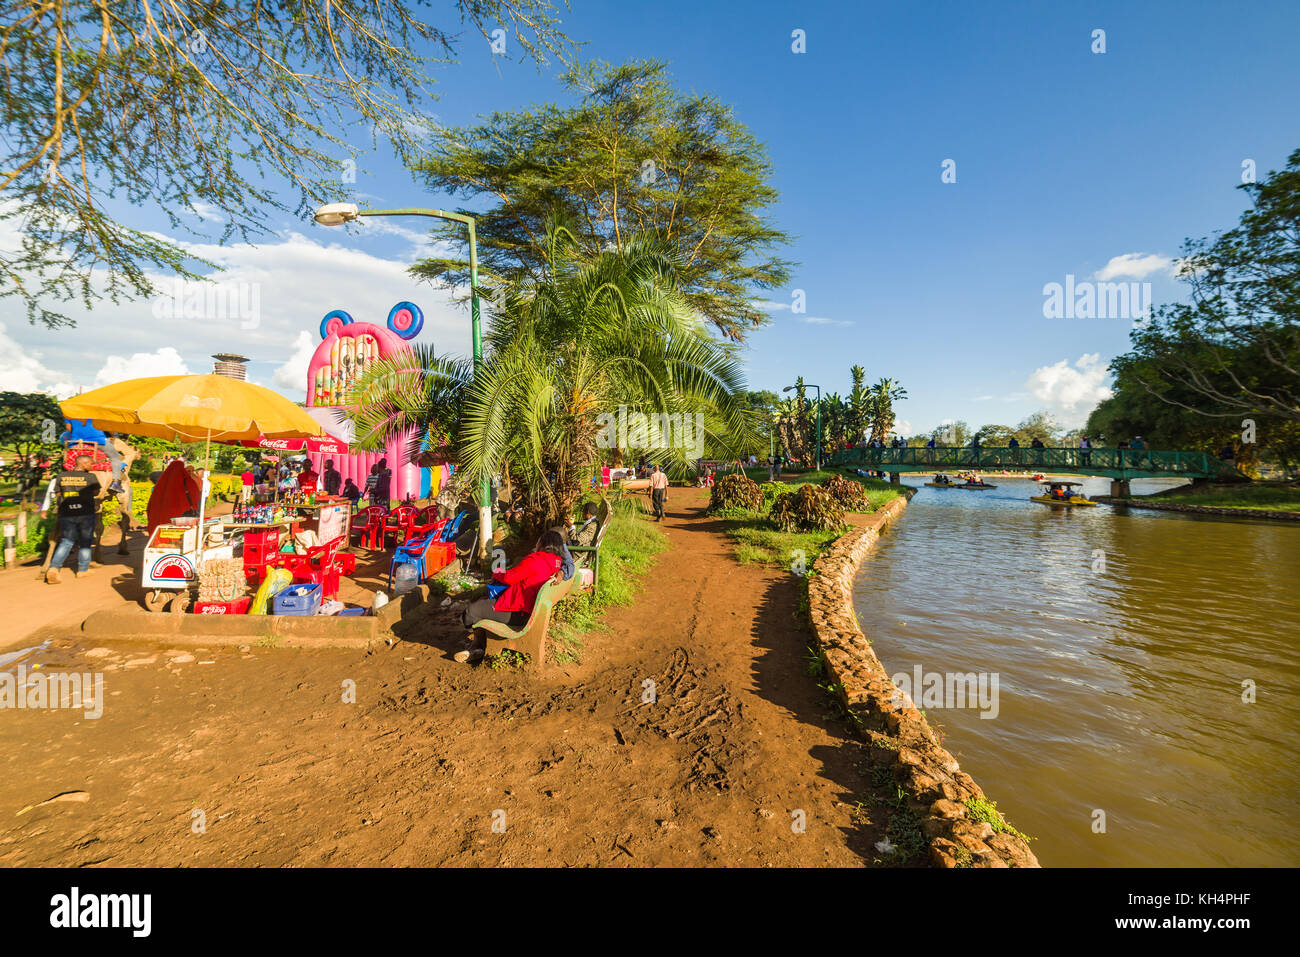 Parc pour enfants ainsi que des personnes marcher dans Uhuru Park par le lac en fin d'après-midi, lumière, Nairobi, Kenya Banque D'Images